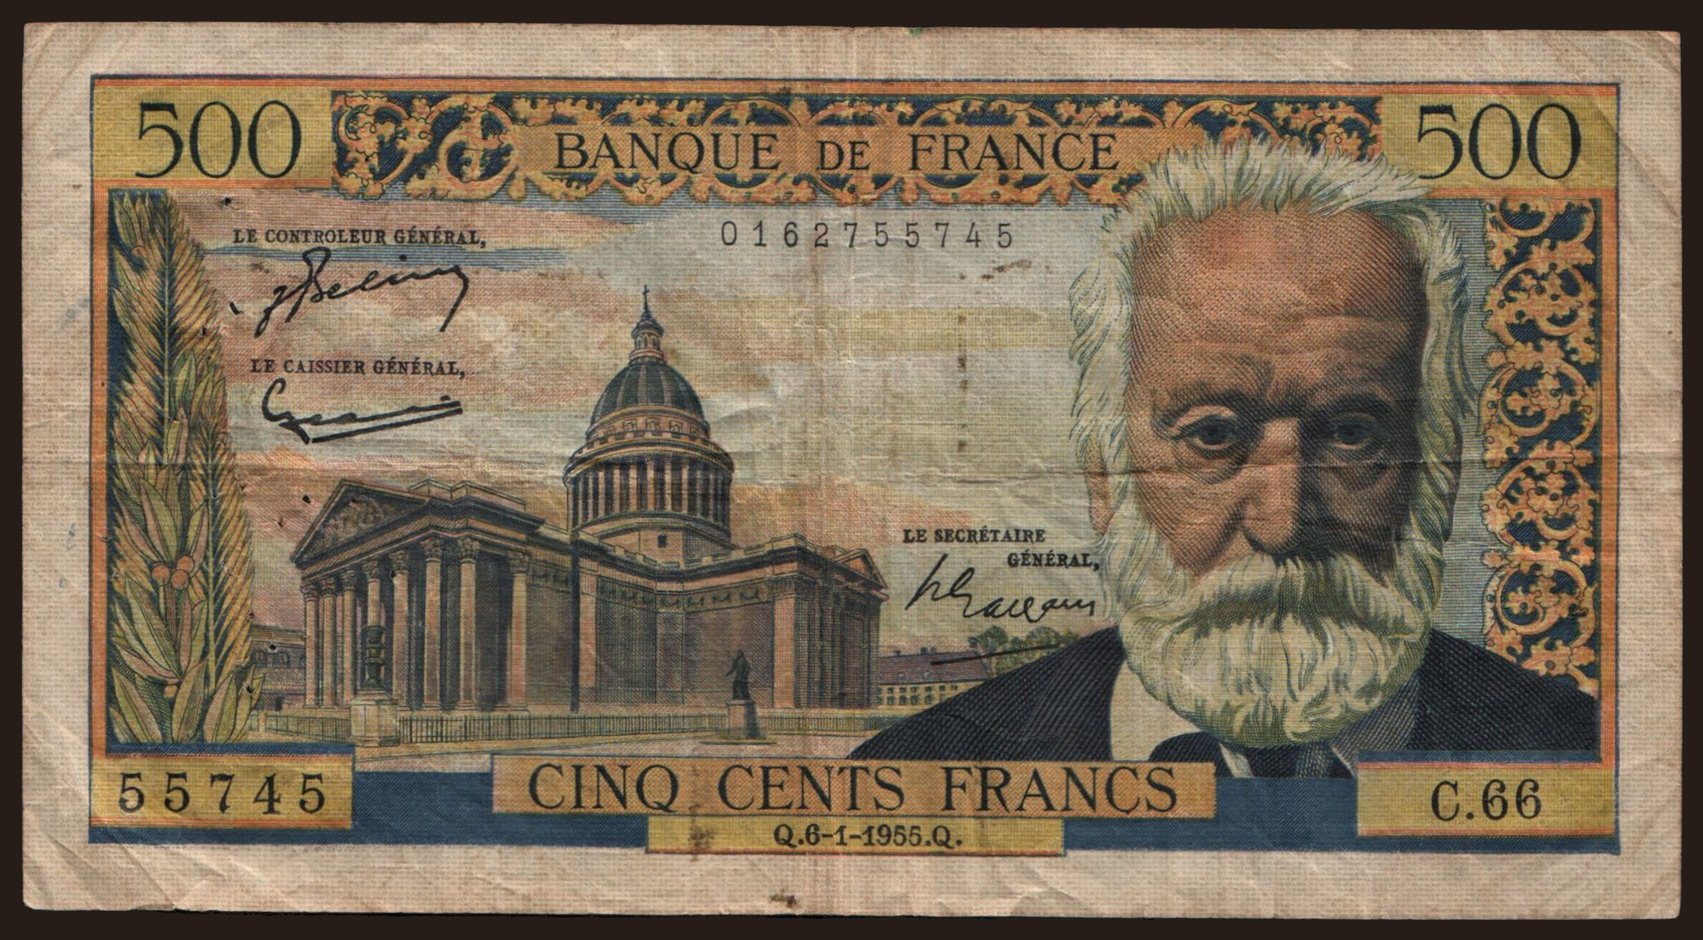 500 francs, 1955